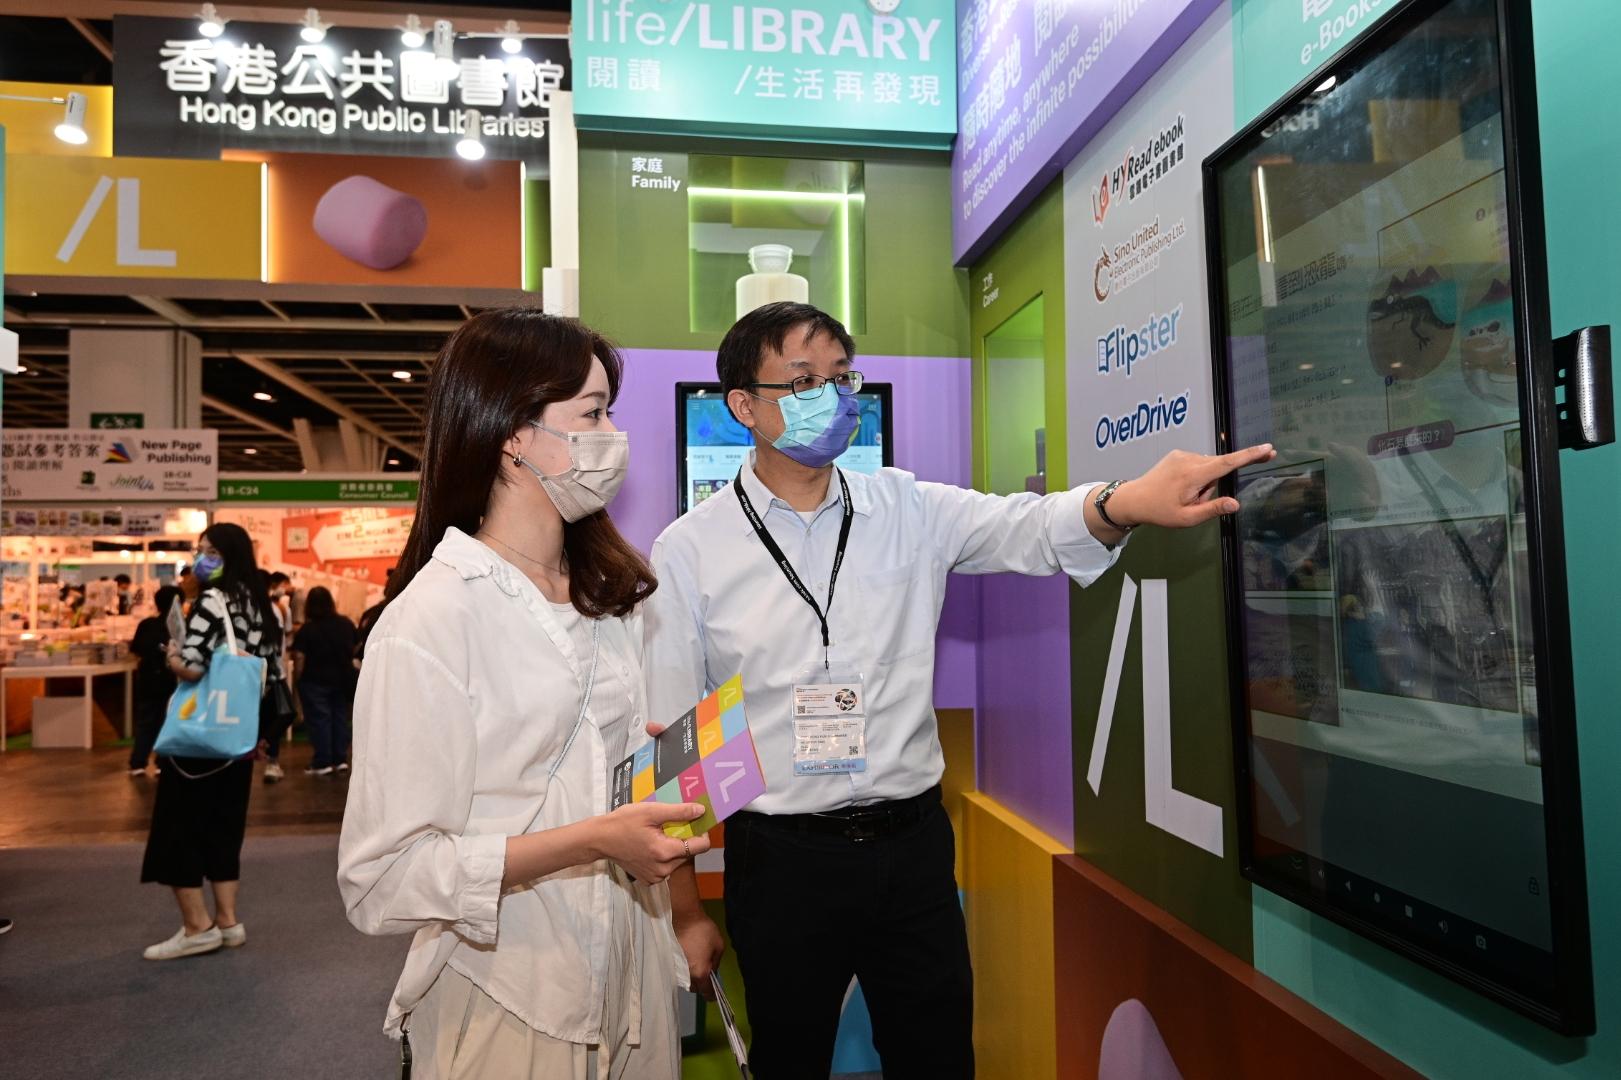 香港公共圖書館今日（七月二十日）至七月二十六日於香港書展設置攤位，向市民介紹圖書館豐富的電子資源館藏。讀者可於現場試用圖書館電子資源，體驗網上圖書館服務的便捷。